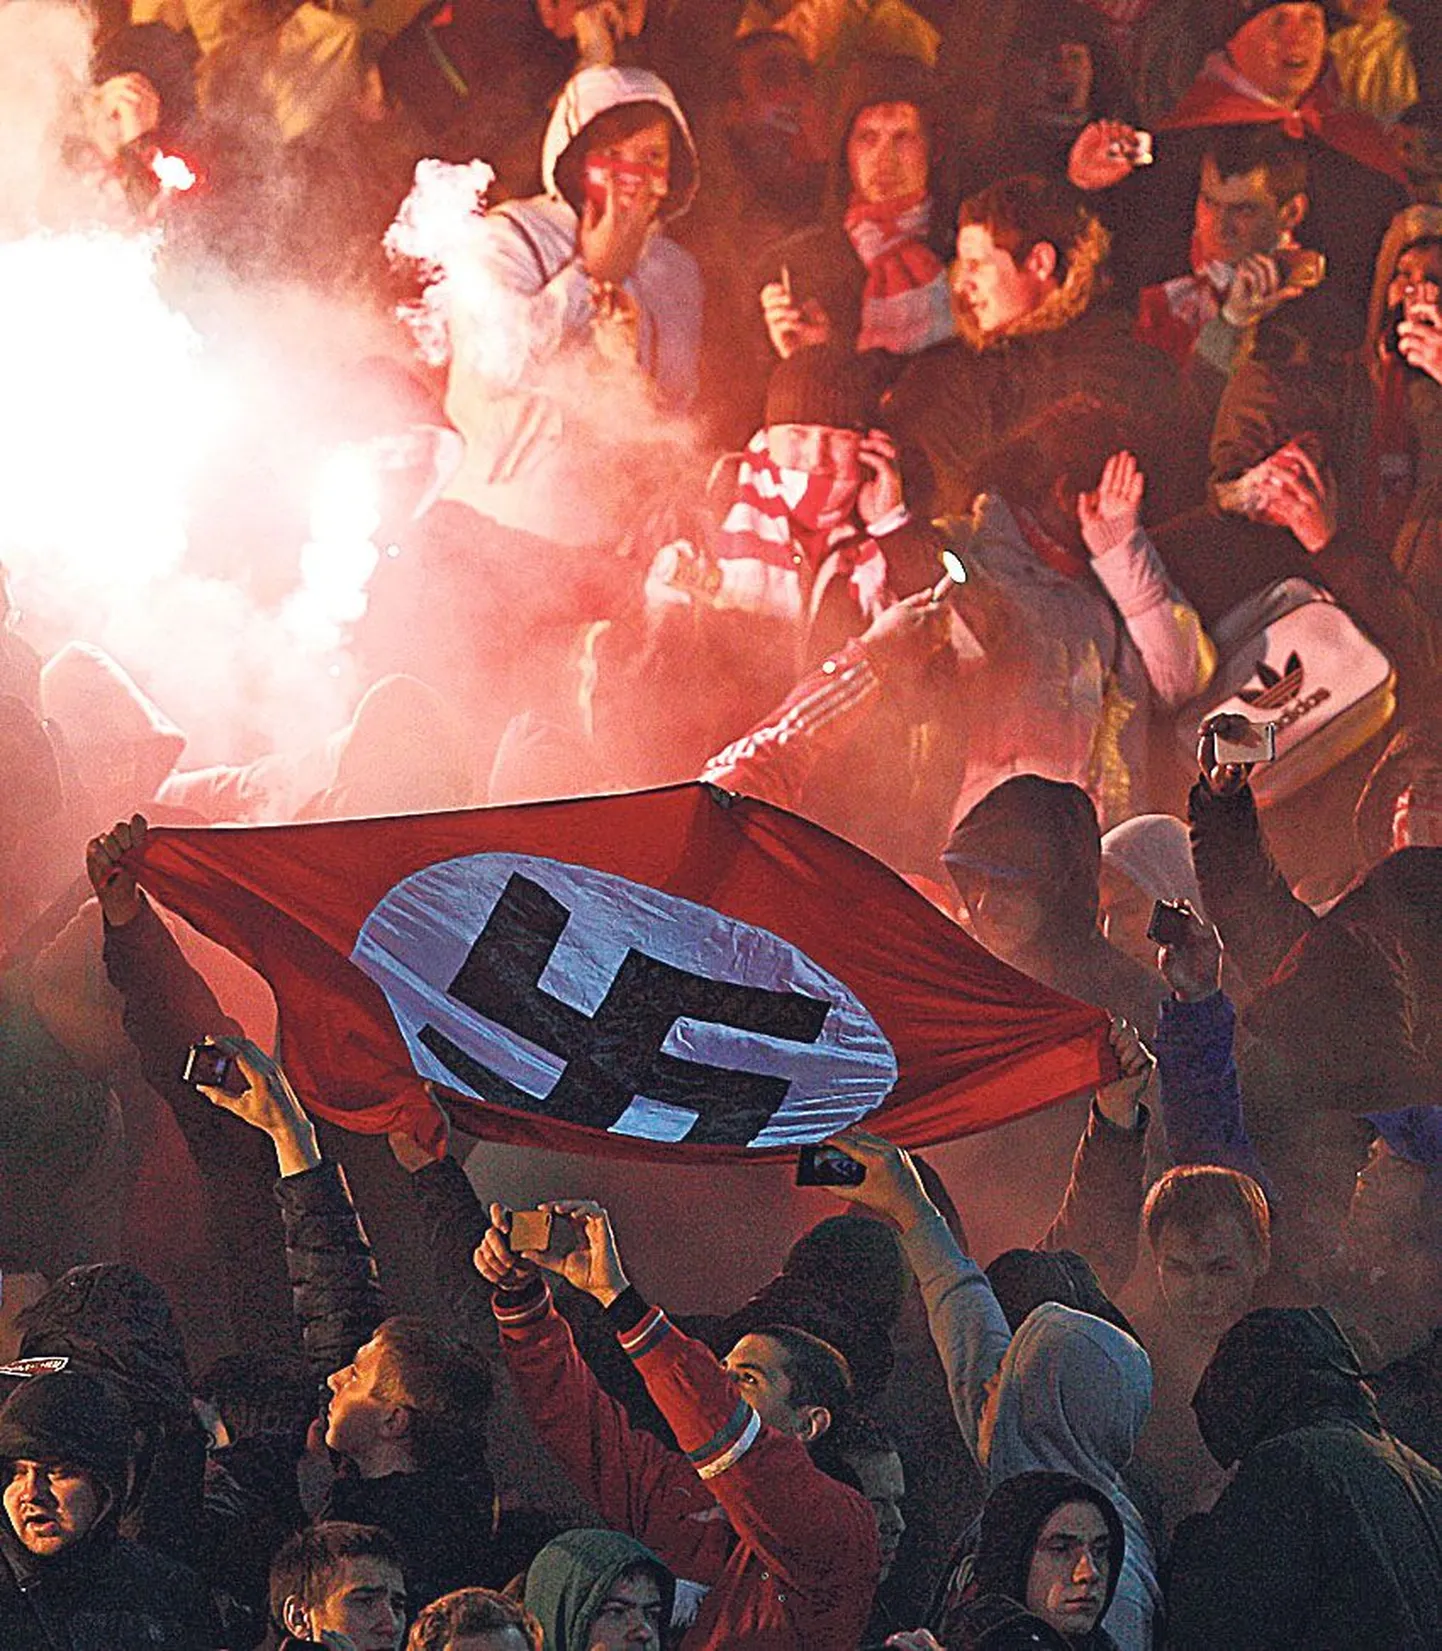 Фанаты московского «Спартака», неоднократно замеченные в проявлении расизма, вывесили на трибуны флаг со свастикой.